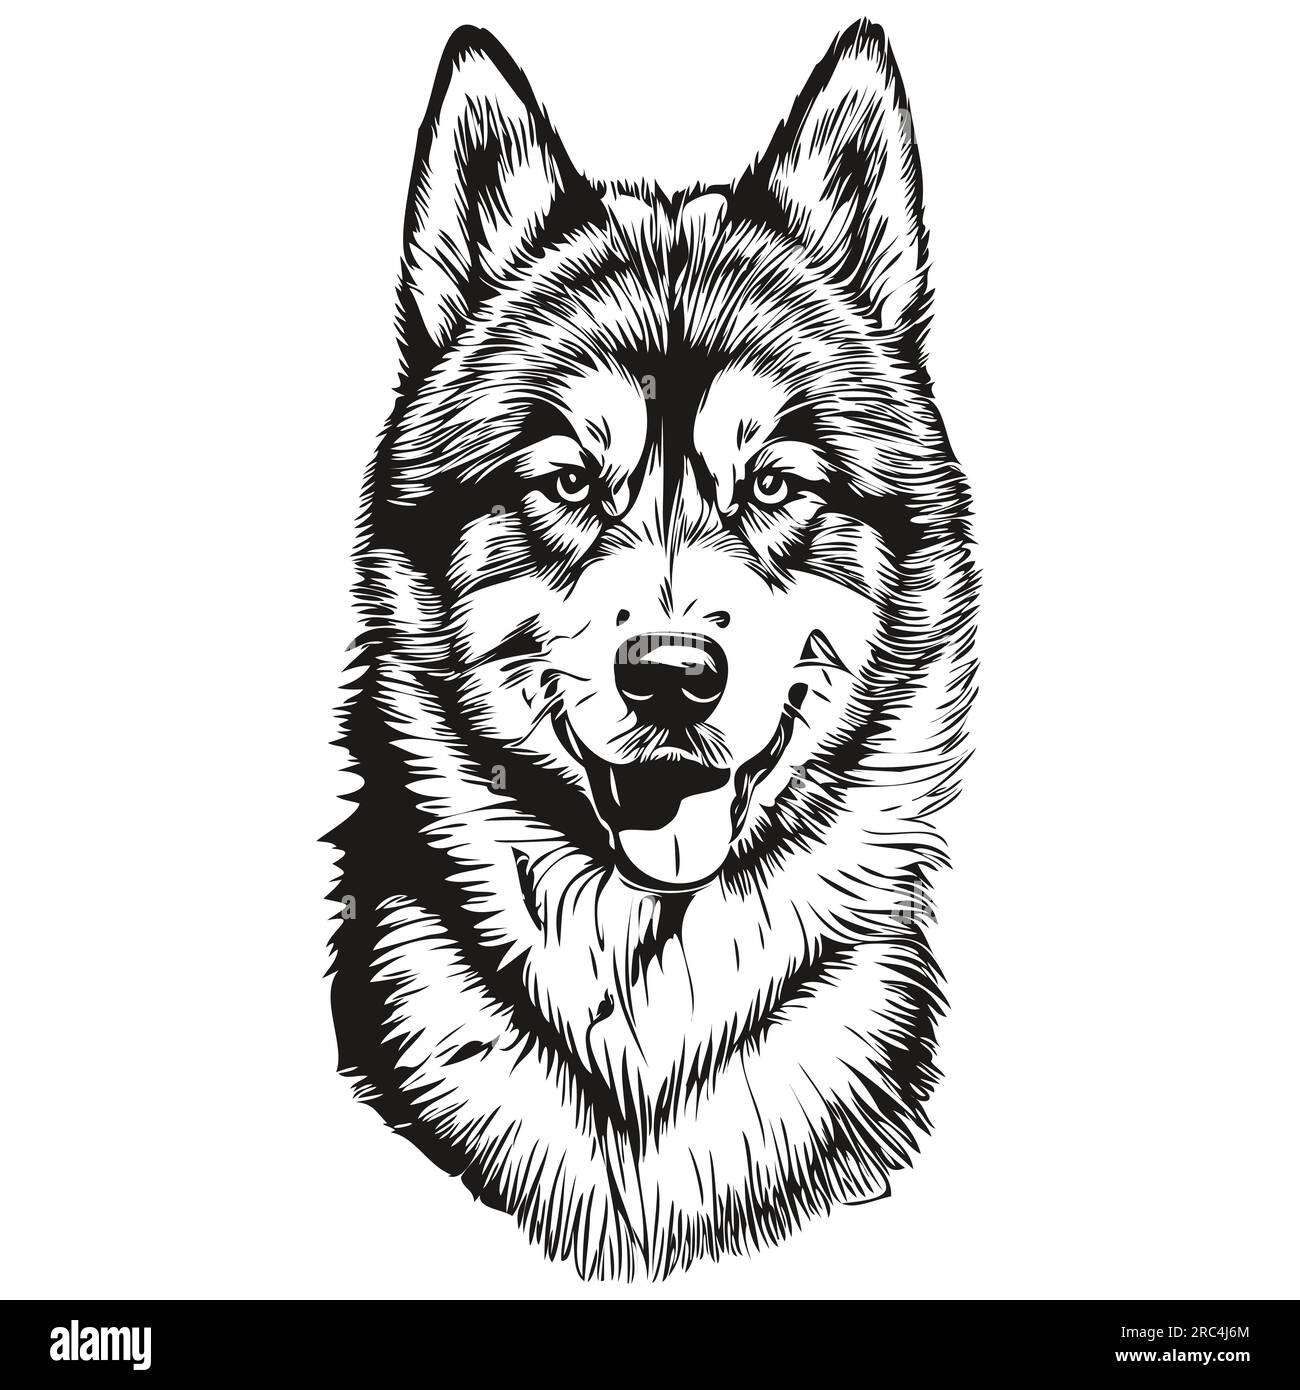 Dessin au trait de race de chien Malamute, clip art animal dessin à la main vecteur noir et blanc Illustration de Vecteur